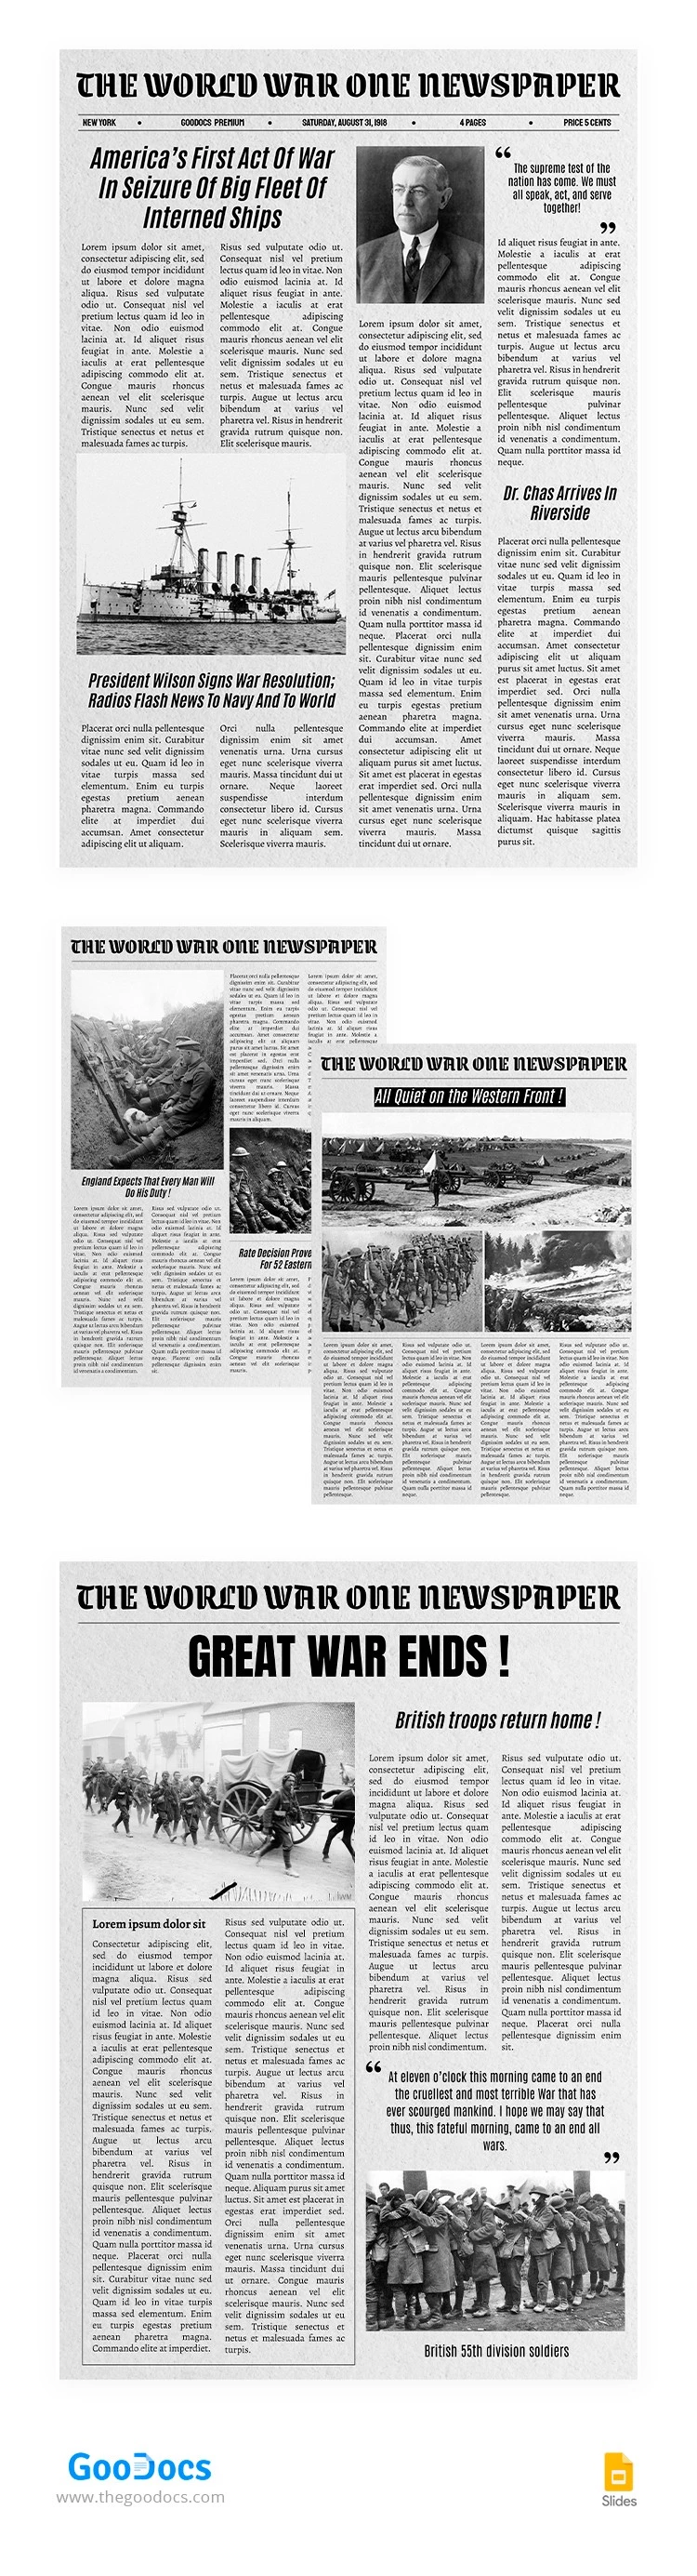 World War One Newspaper - free Google Docs Template - 10066075